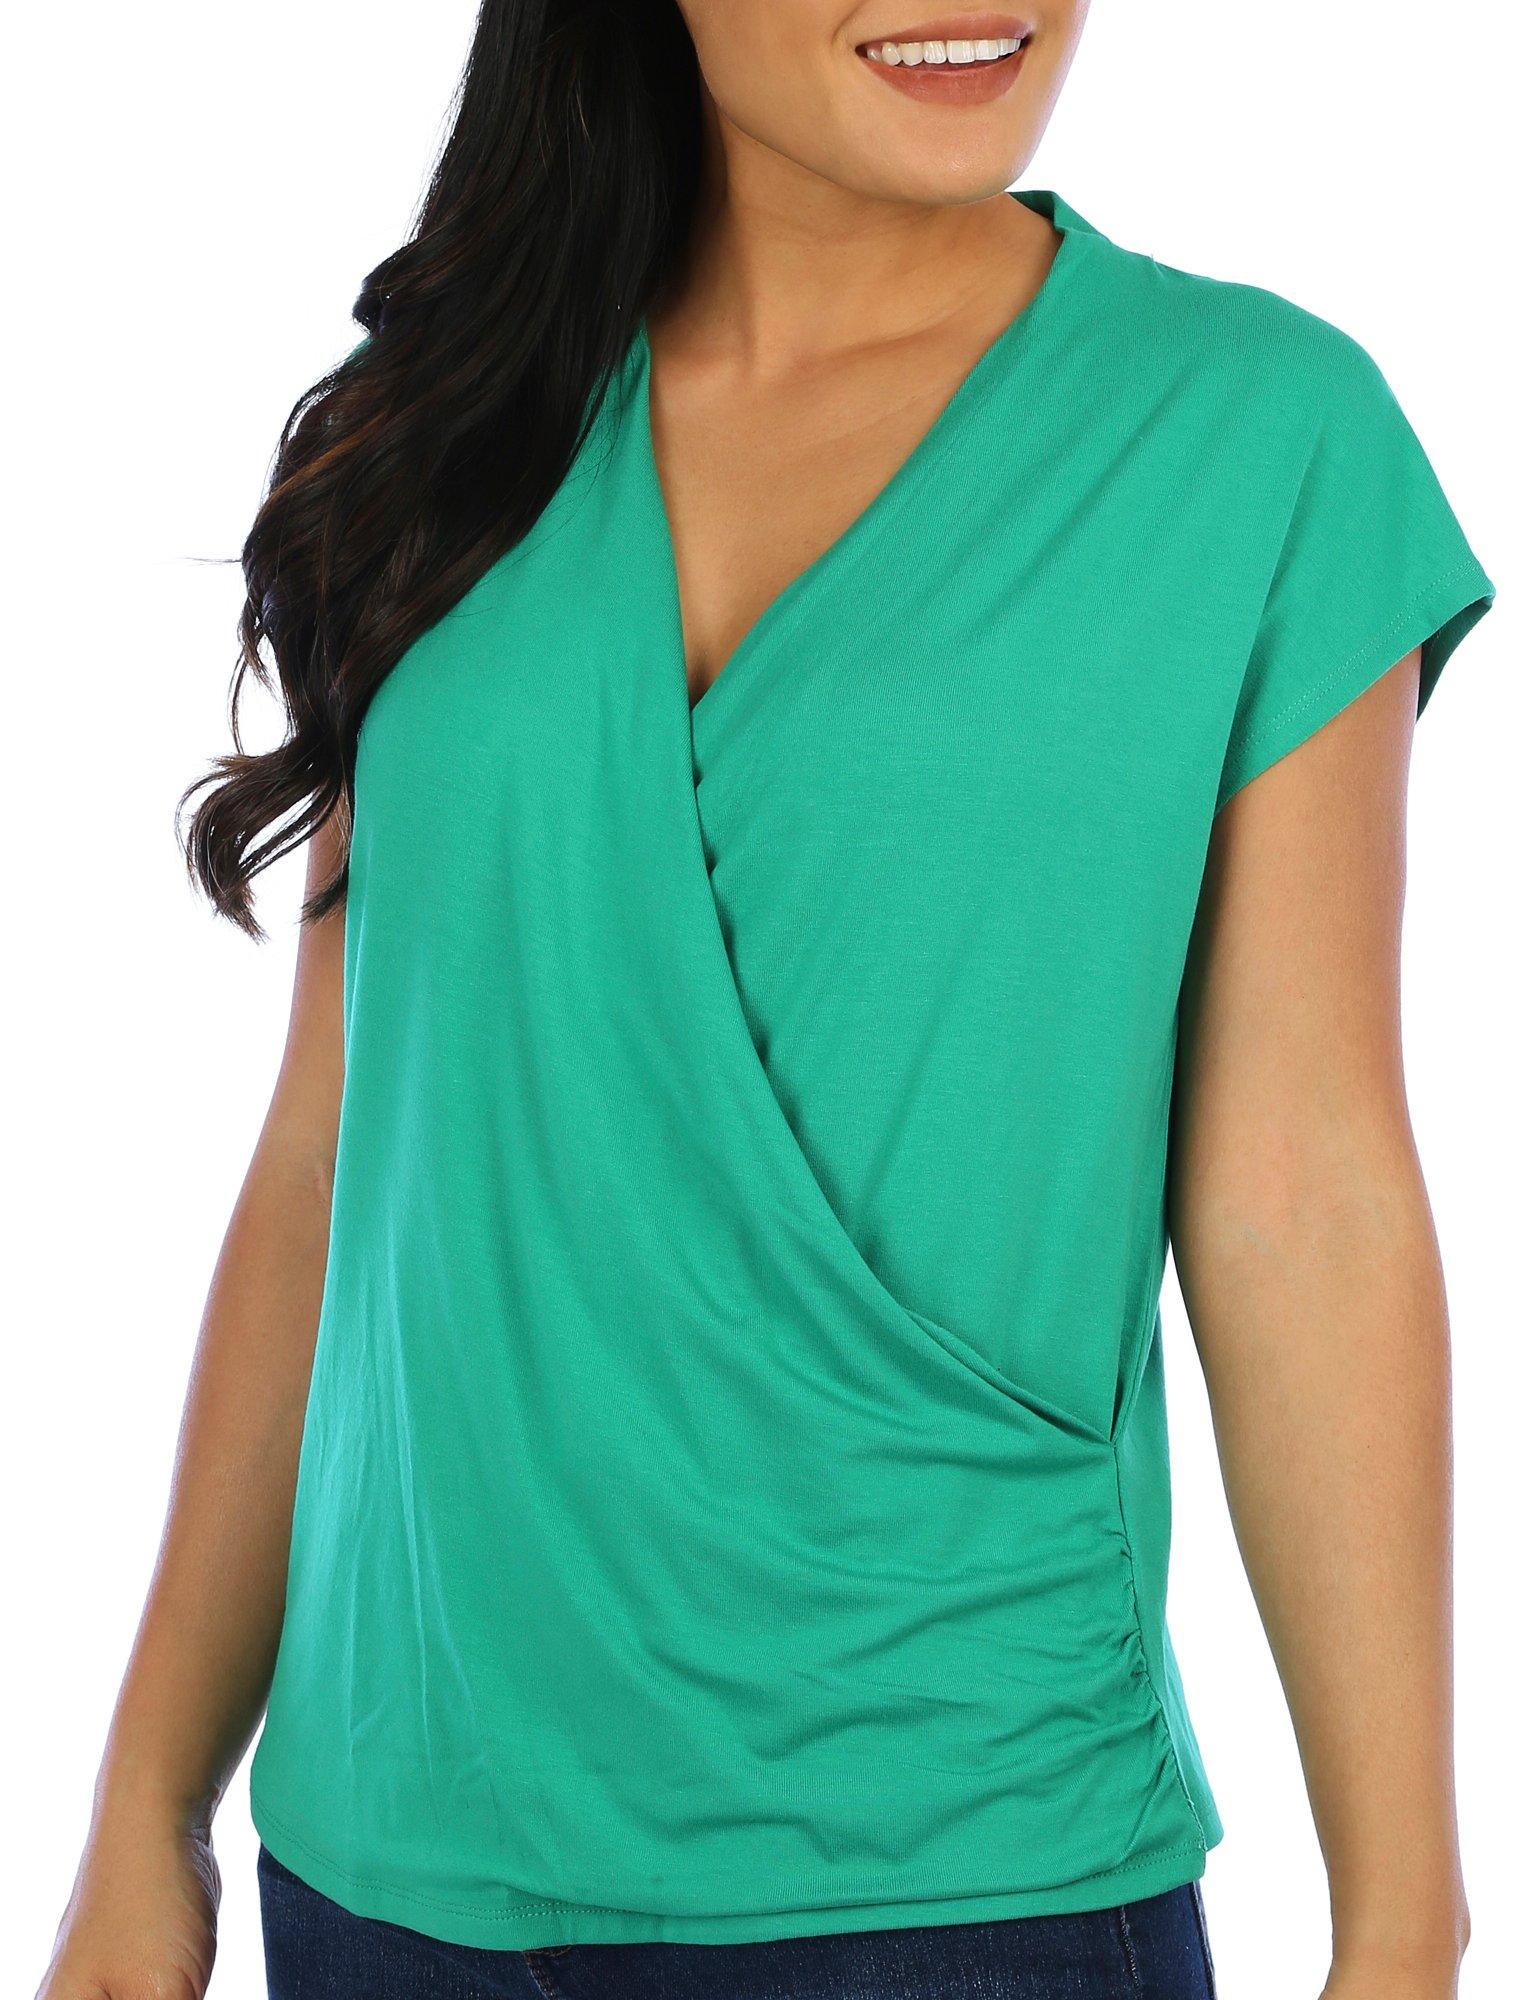 Reel Legends Womens Islamorada Print Sleeveless Top - Green Multi - Medium